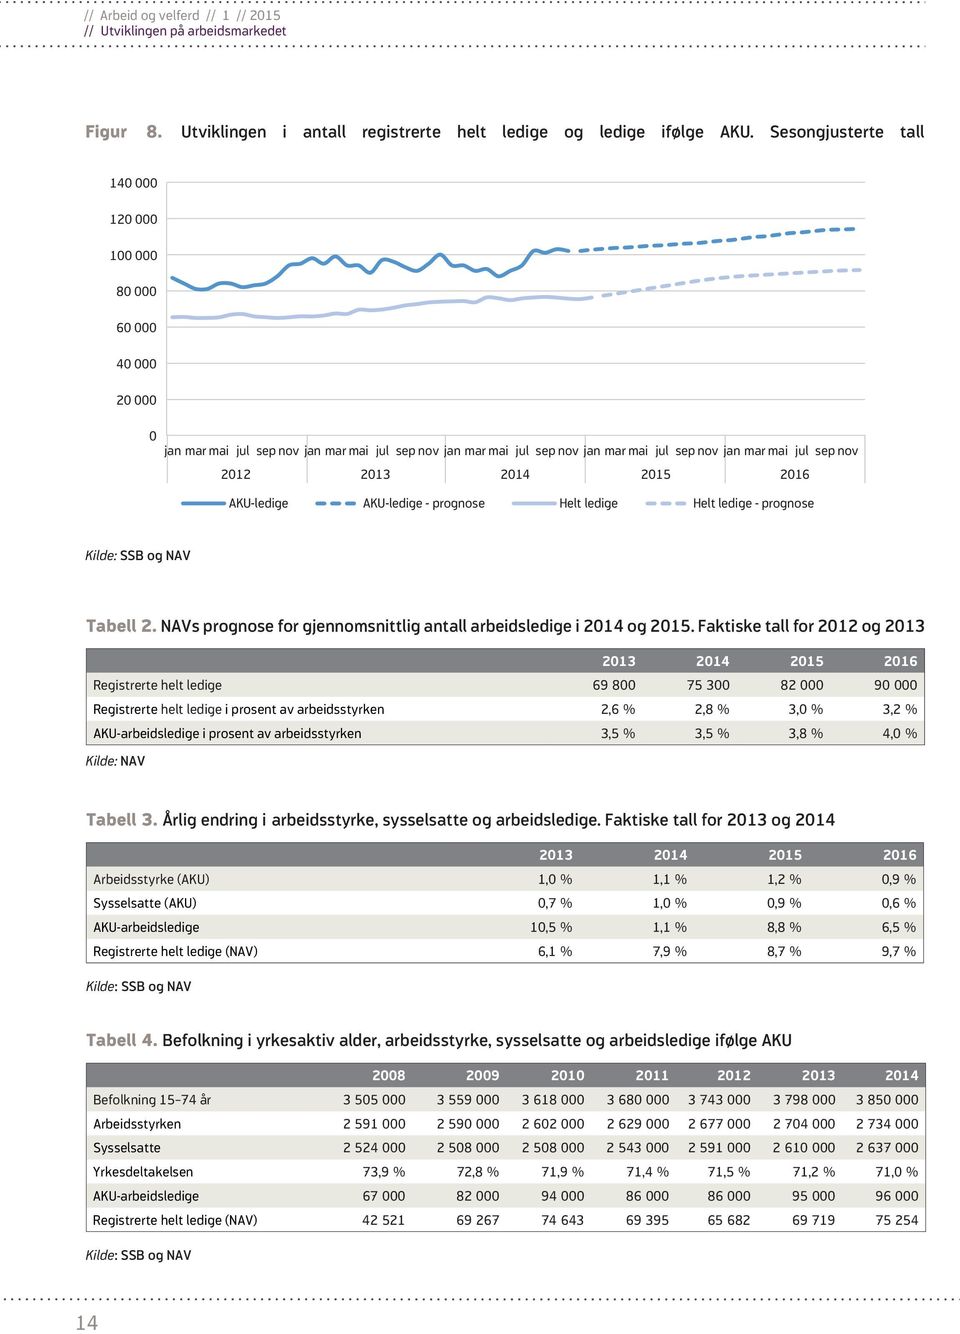 NAVs prognose for gjennomsnittlig antall arbeidsledige i 2014 og 2015.